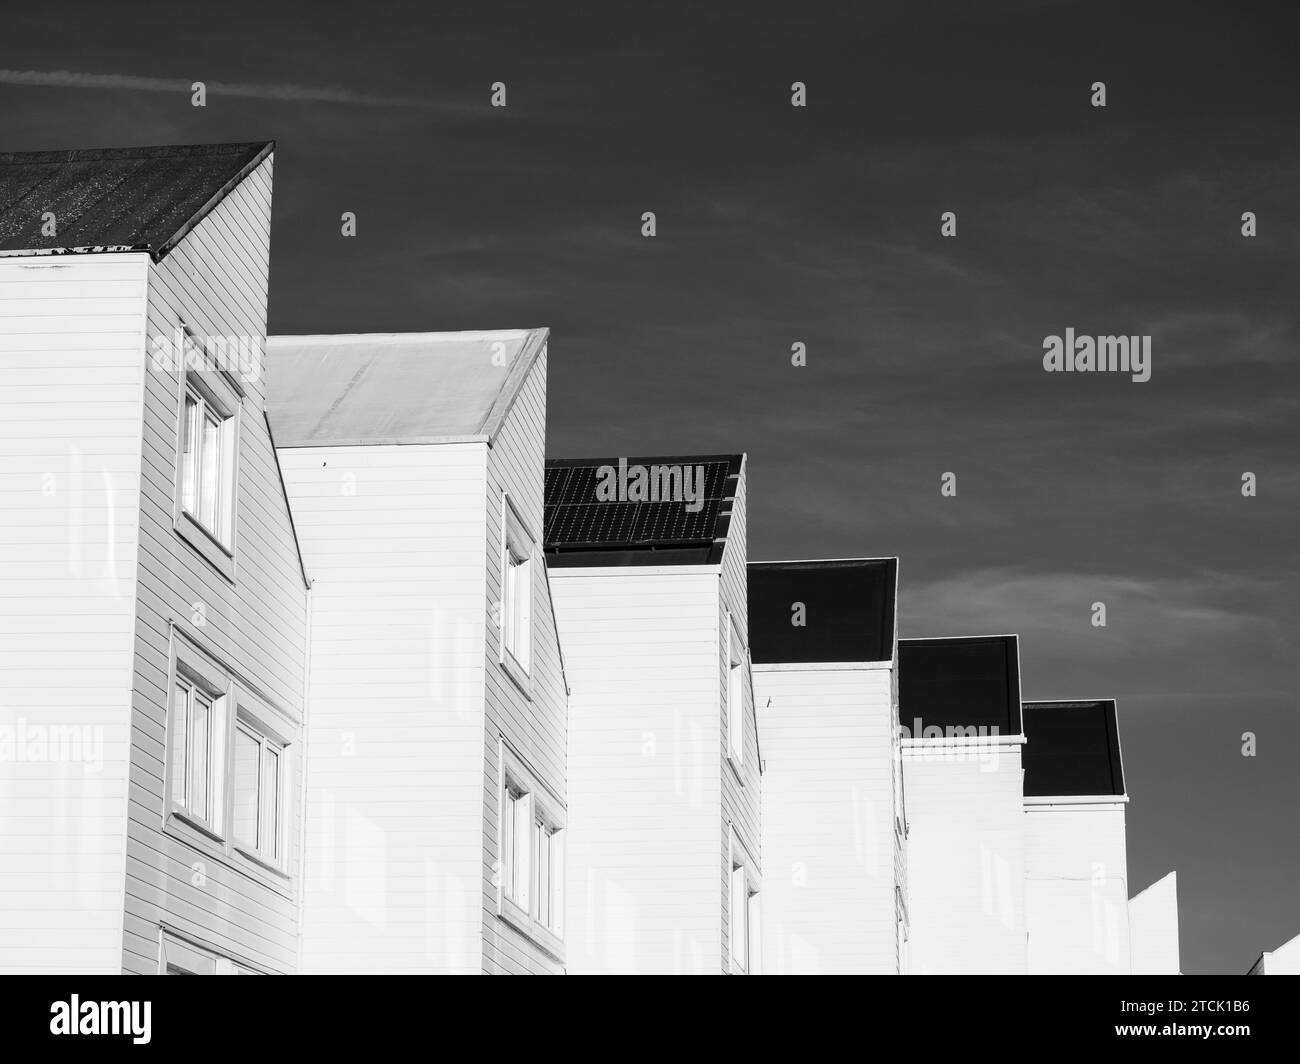 Paysage urbain noir et blanc, maisons modernes, Nr River Thames, Marlow, Buckinghamshire, Angleterre, Royaume-Uni, GB. Banque D'Images